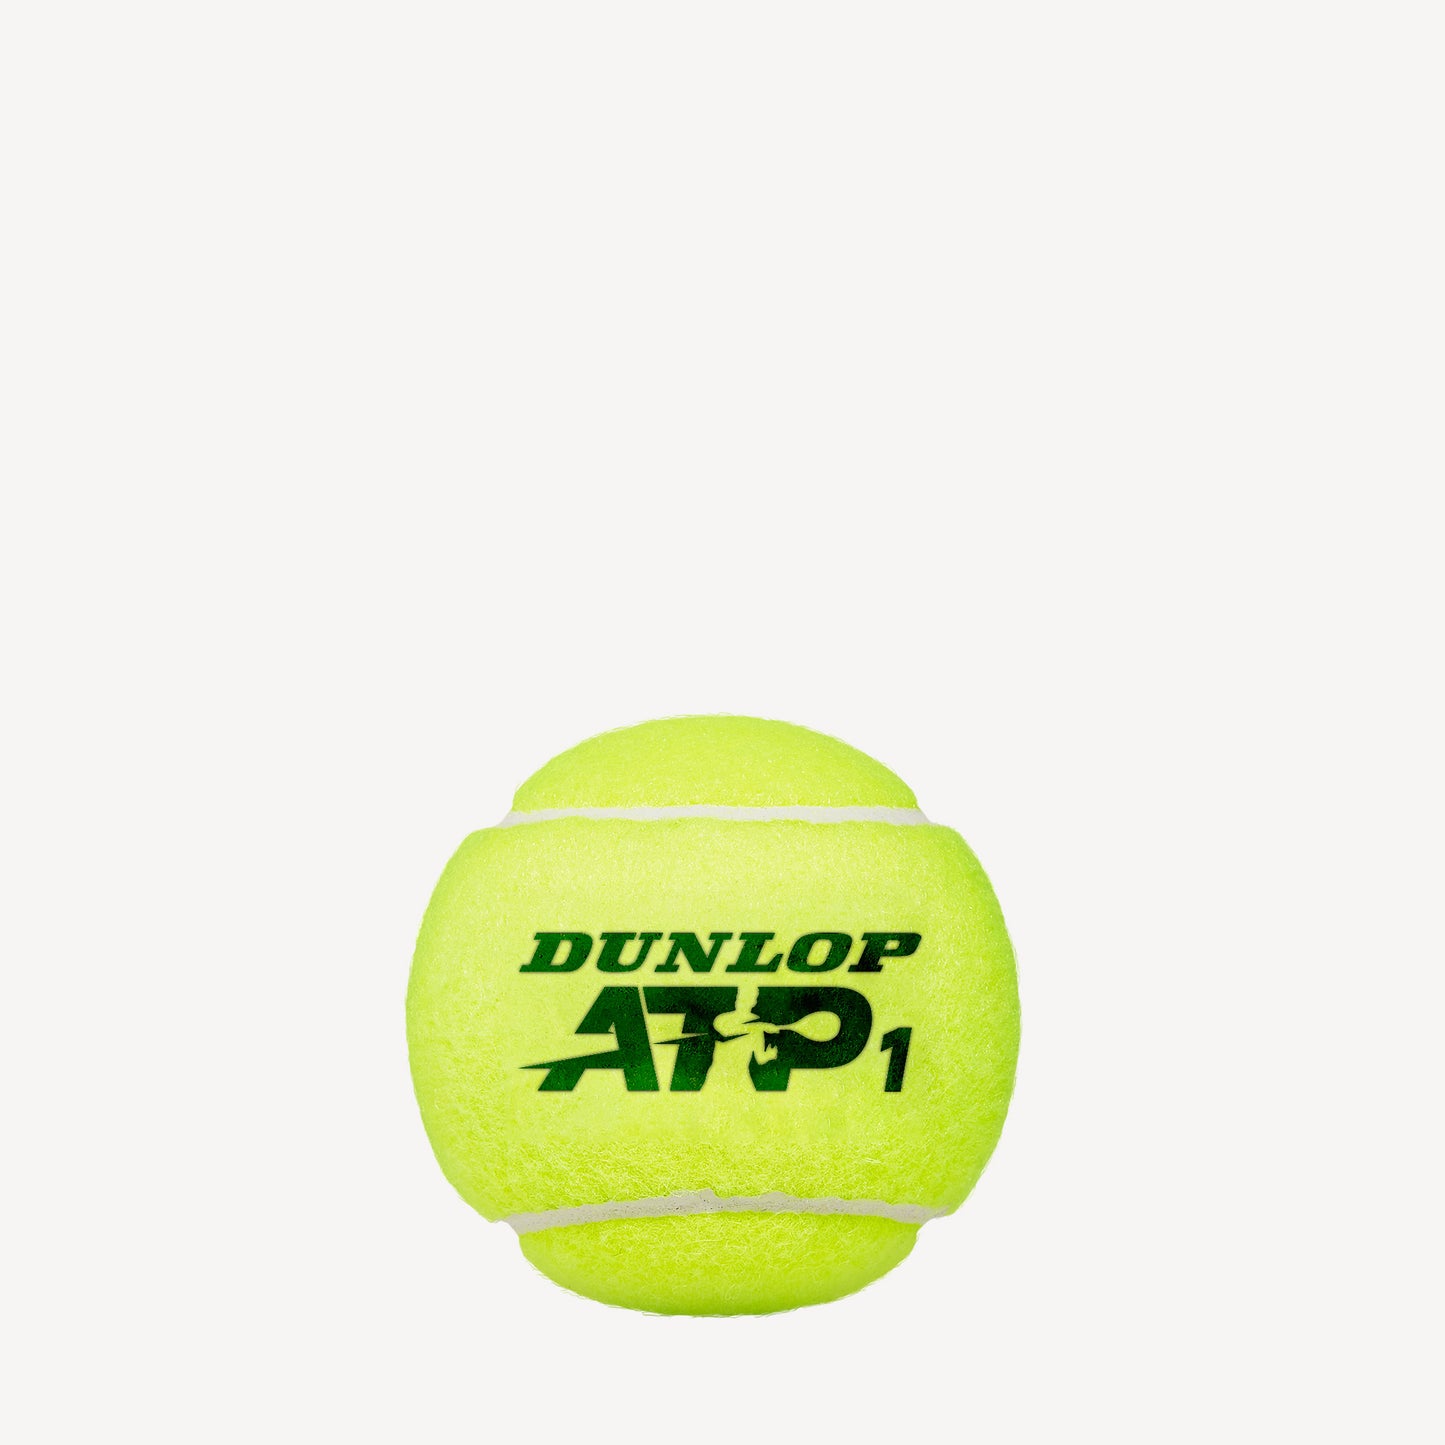 Dunlop ATP 4 Tennis Balls 2